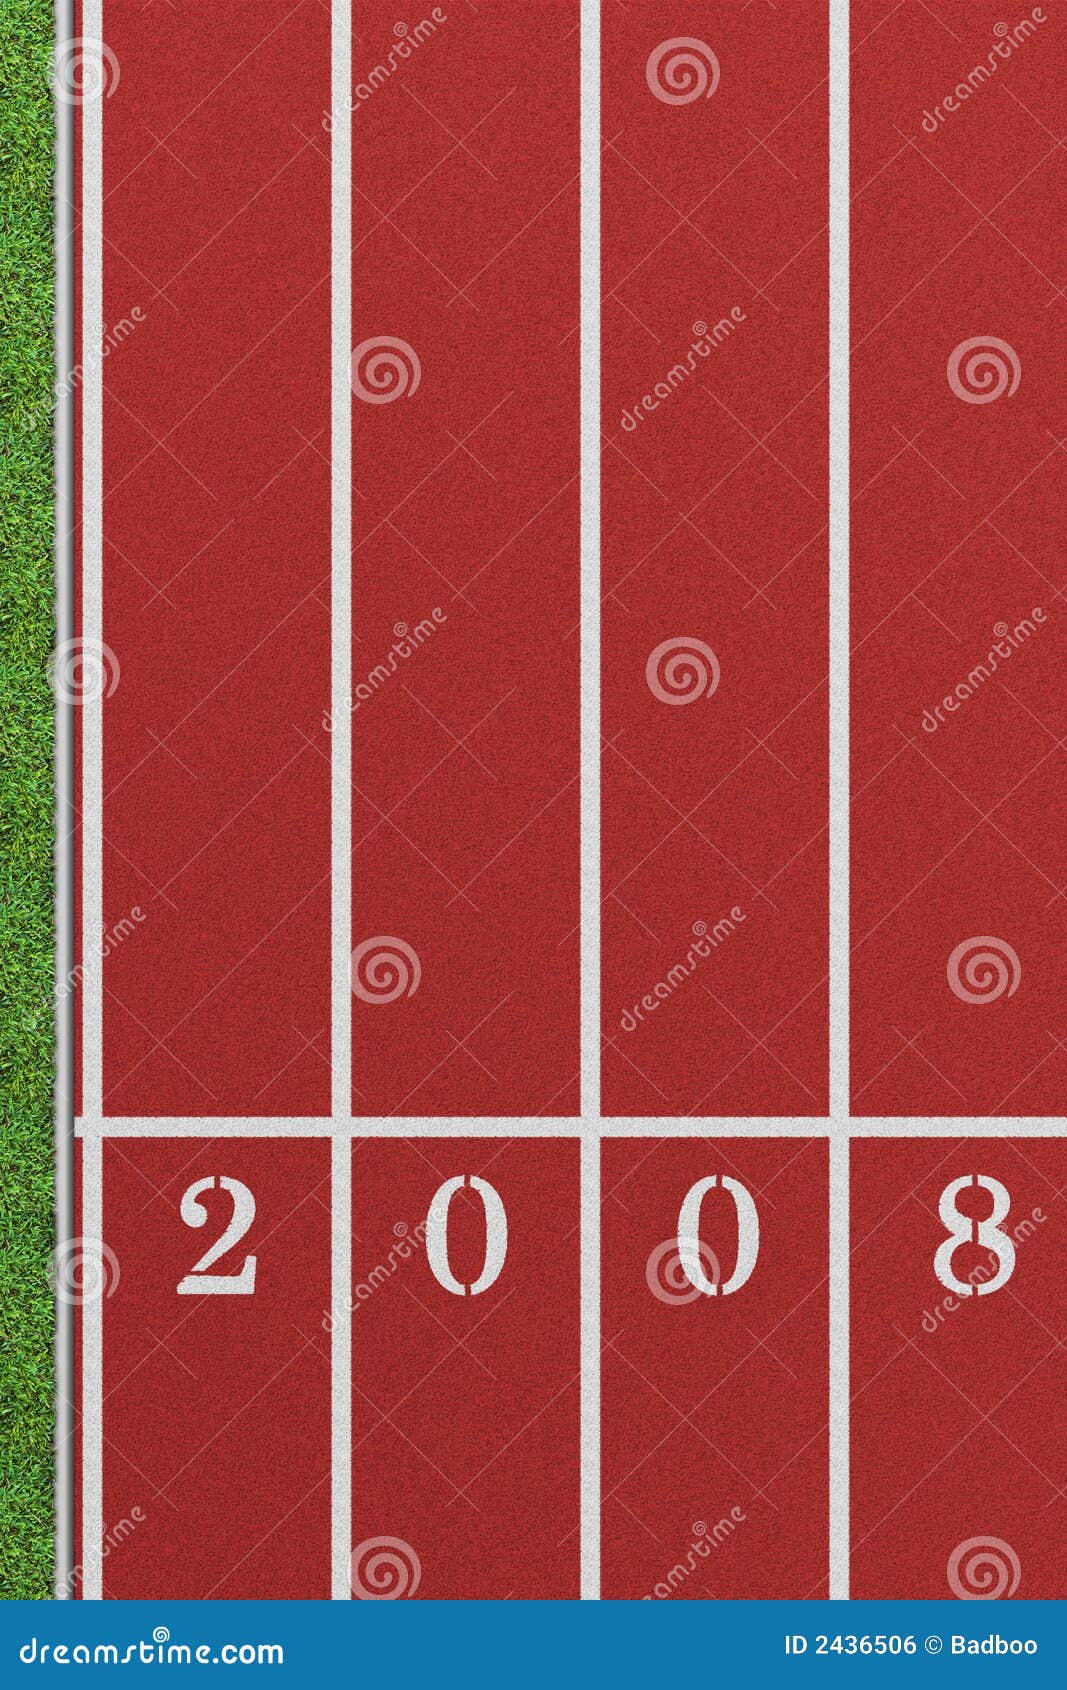 Trilha Running 2008. Trilha Running da perspectiva de um pássaro que mostra 4 pistas com o ano 2008 e uma correcção de programa do gramado à esquerda